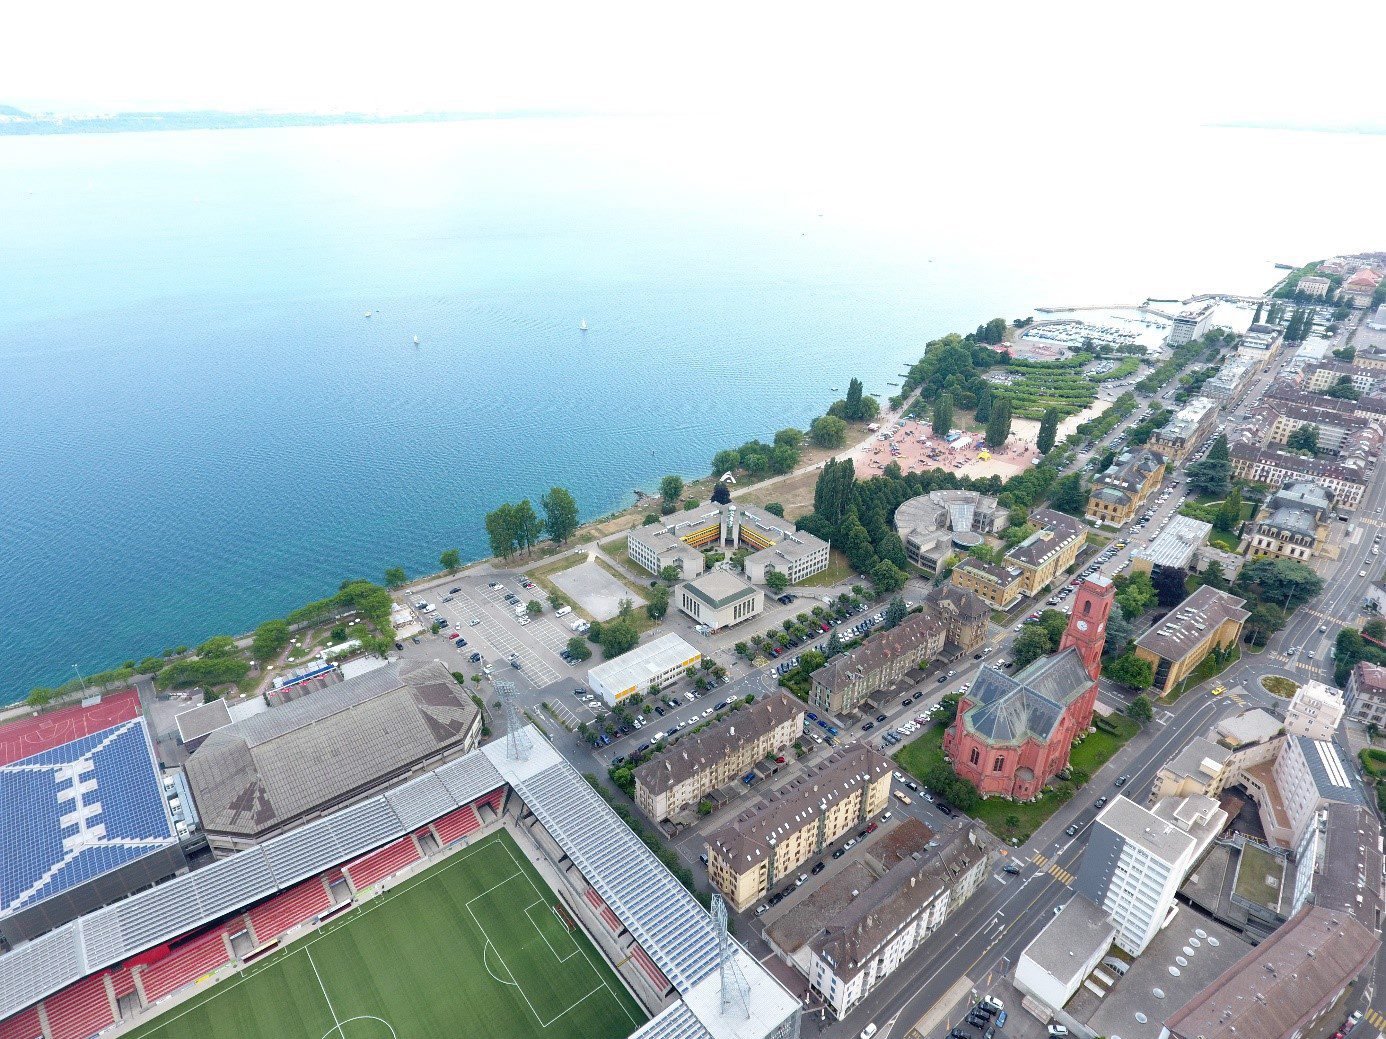 Le nouveau bâtiment de l'Université de Neuchâtel devrait s'édifier juste à côté des actuels locaux de la Faculté des lettres, au bord du lac.